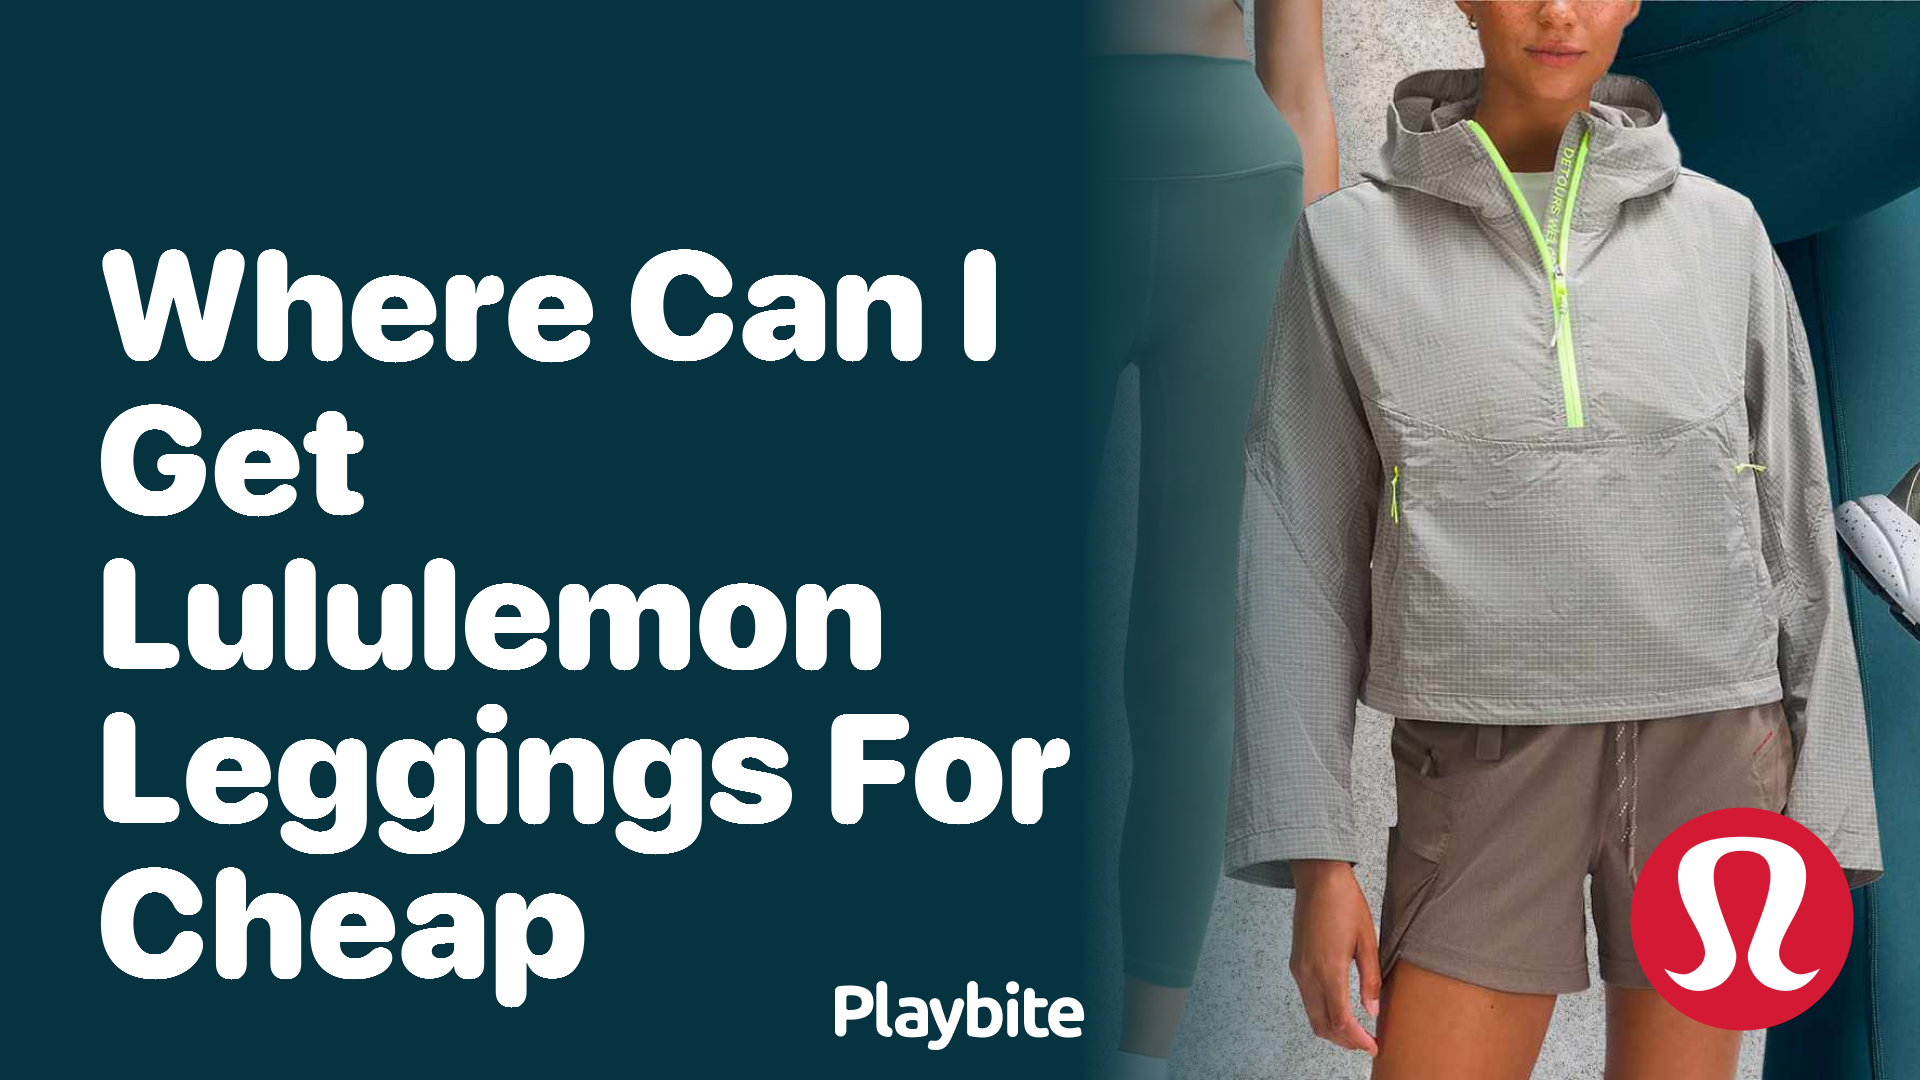 Where Can I Get Lululemon Leggings for Cheap? - Playbite